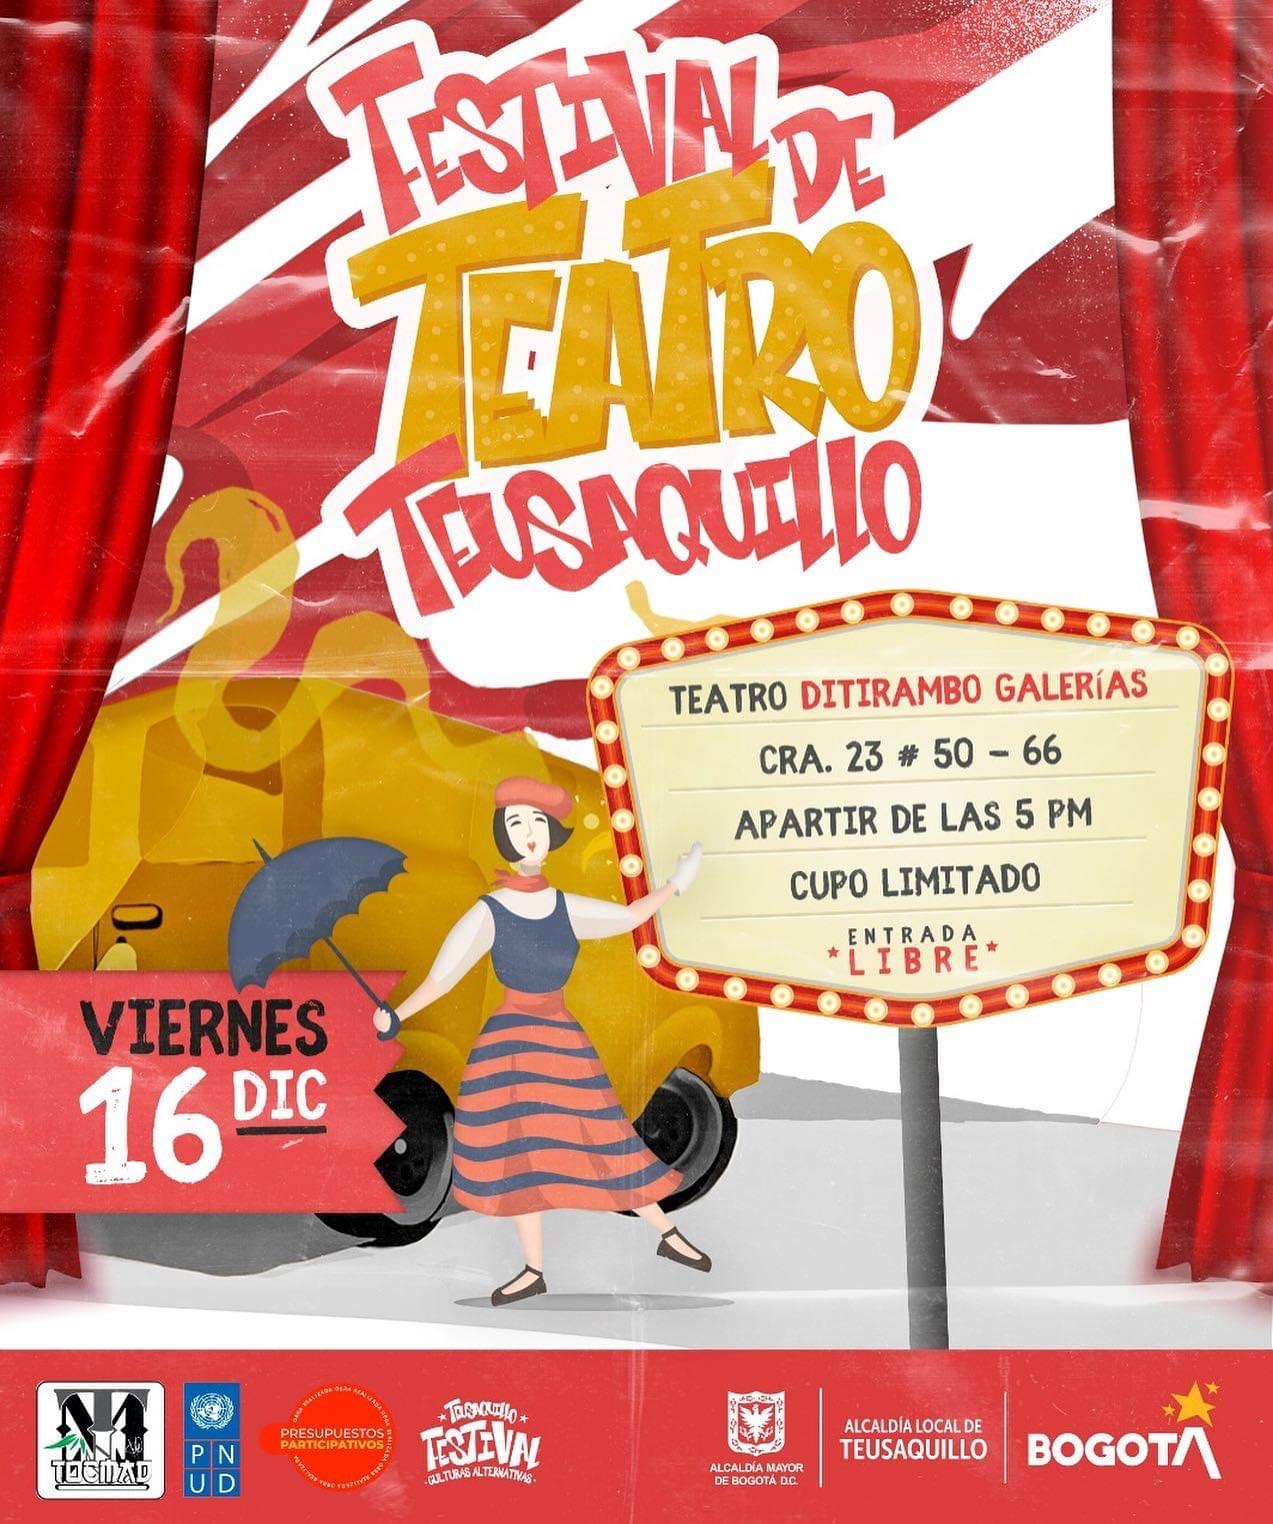 Festival de teatro de Teusaquillo!